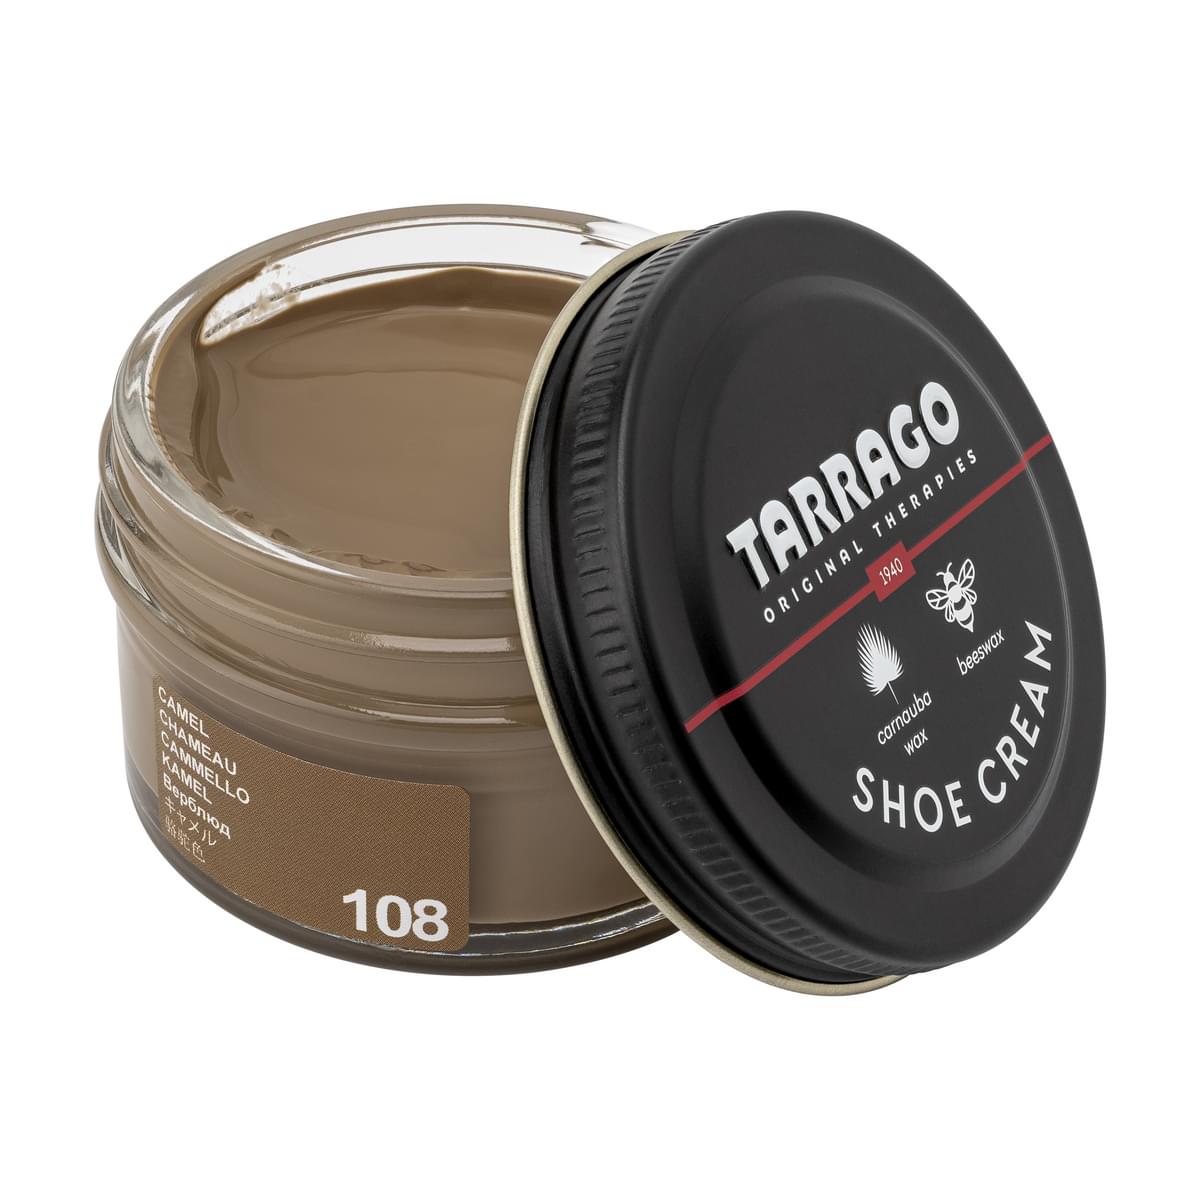 Tarrago Shoe Cream  - Camel - 108